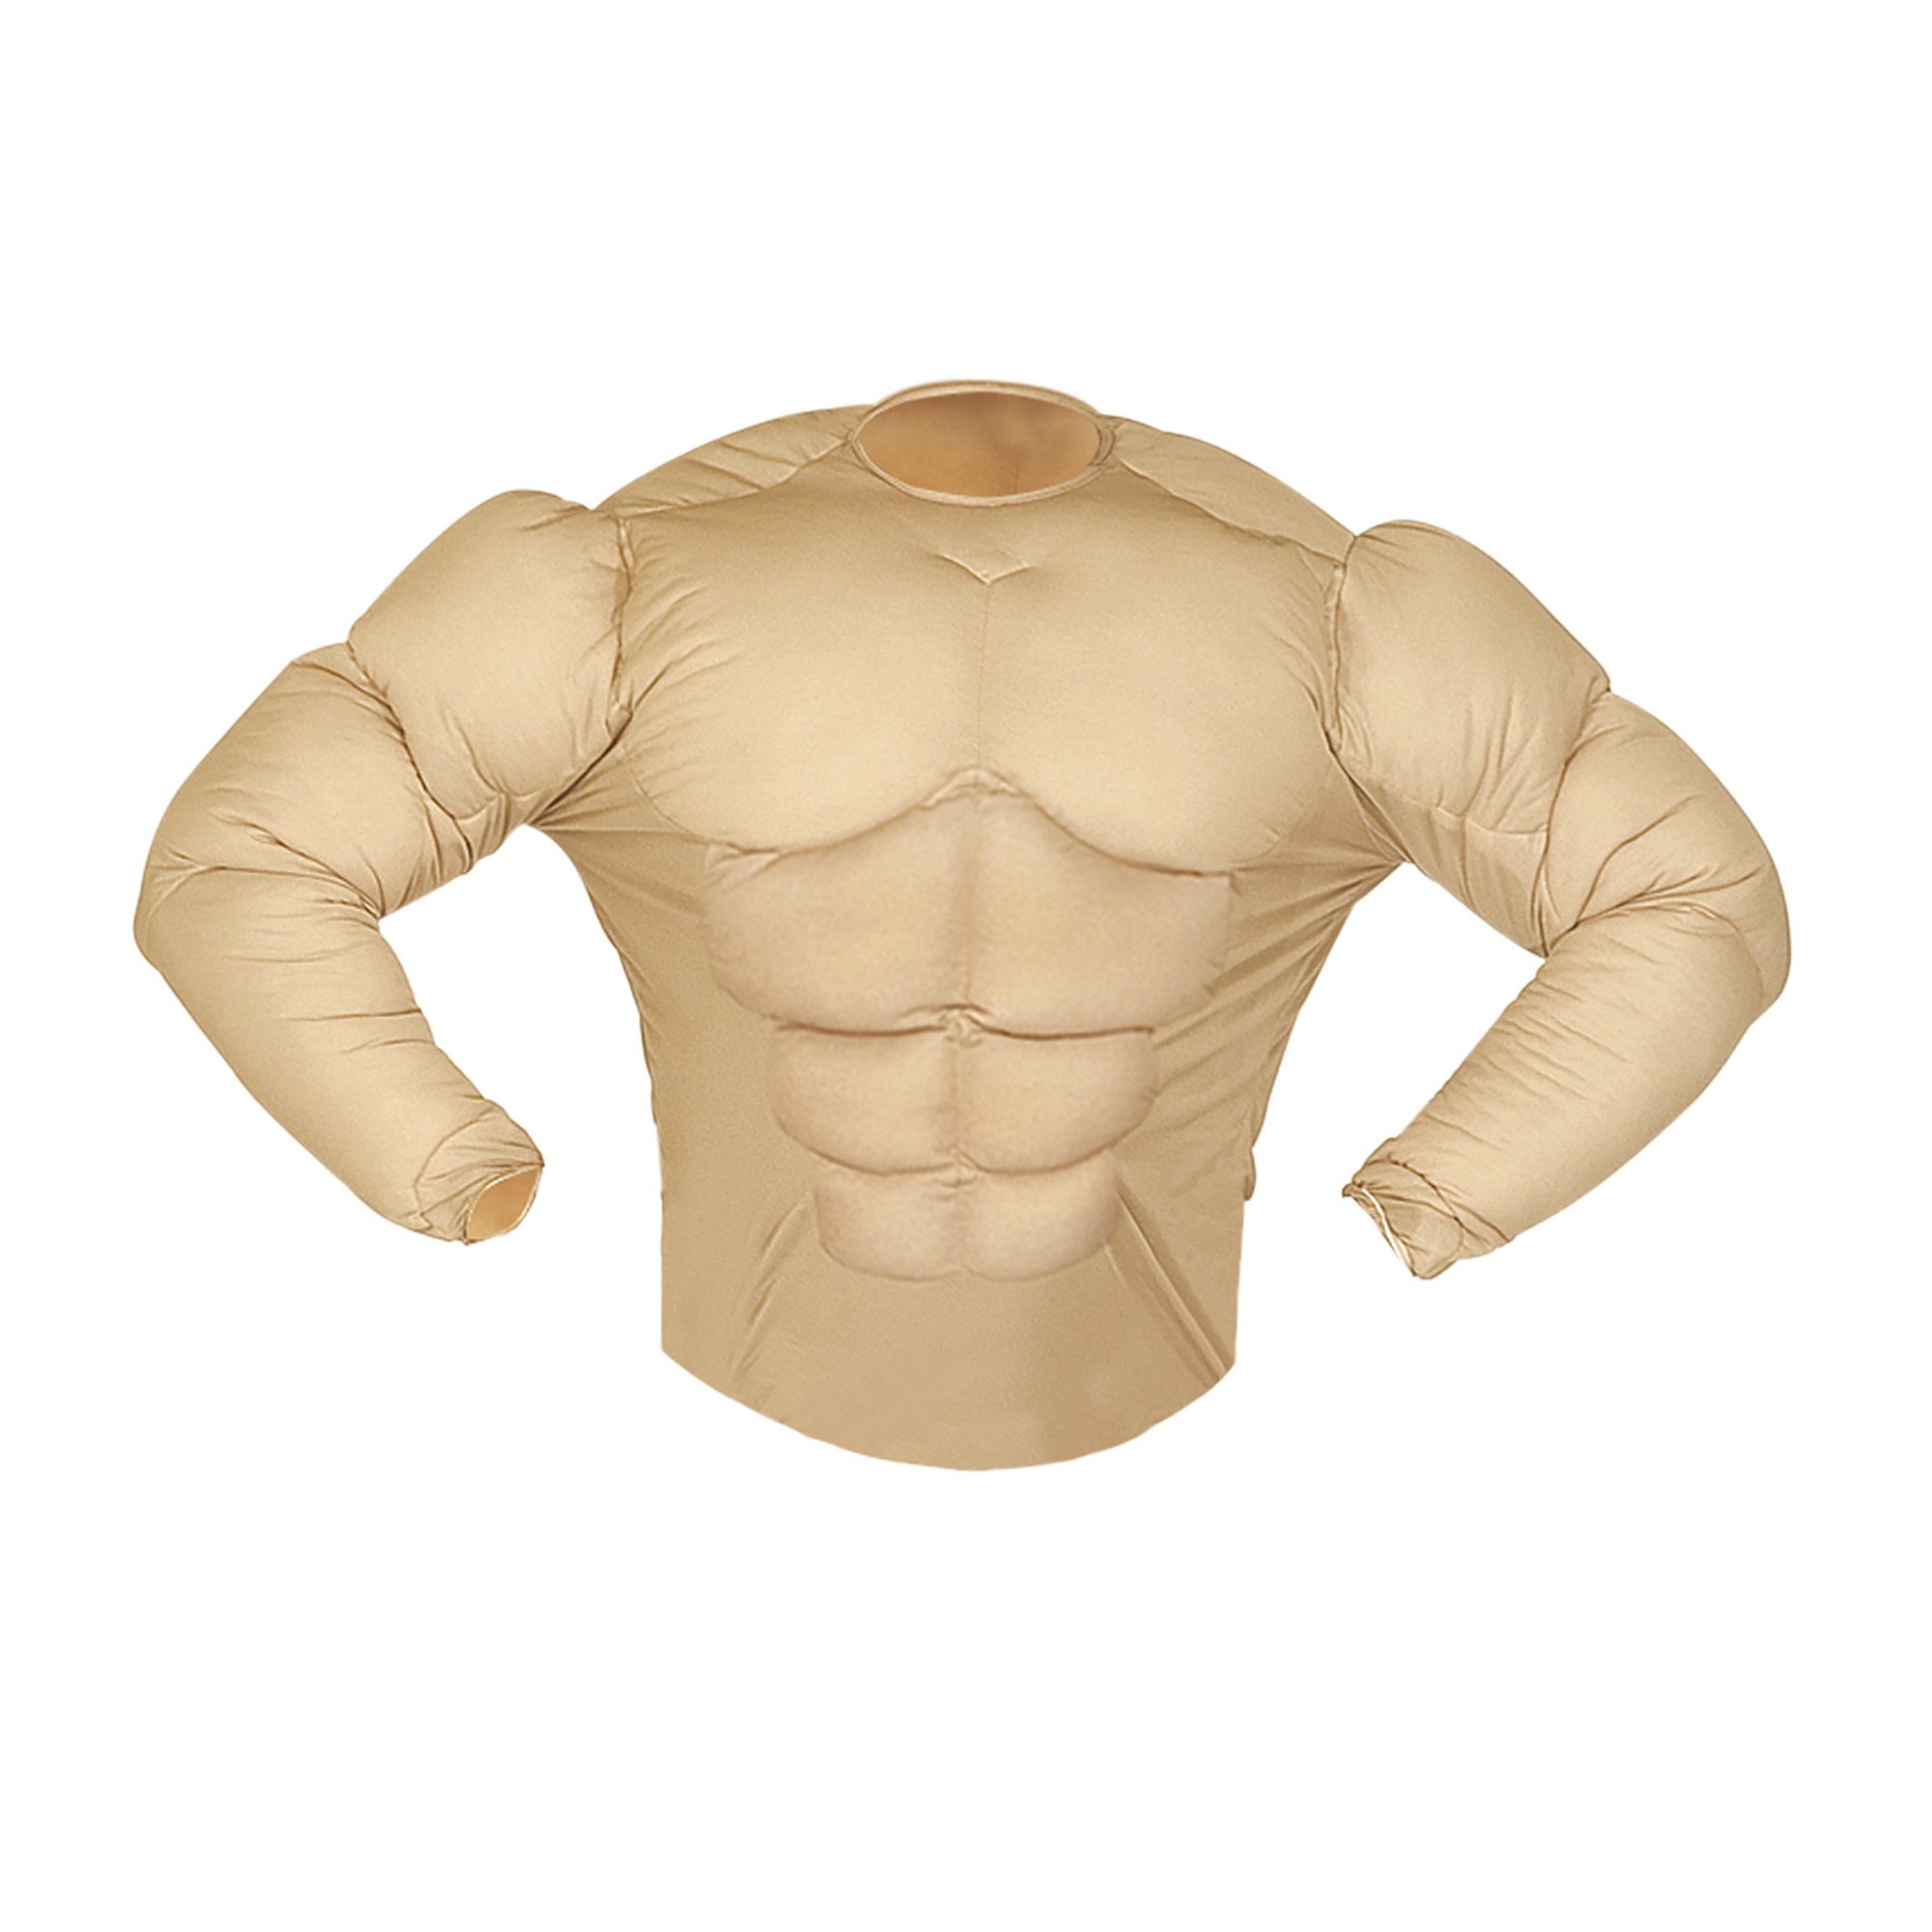 Body builder shirt spieren shirt kind spierbundel